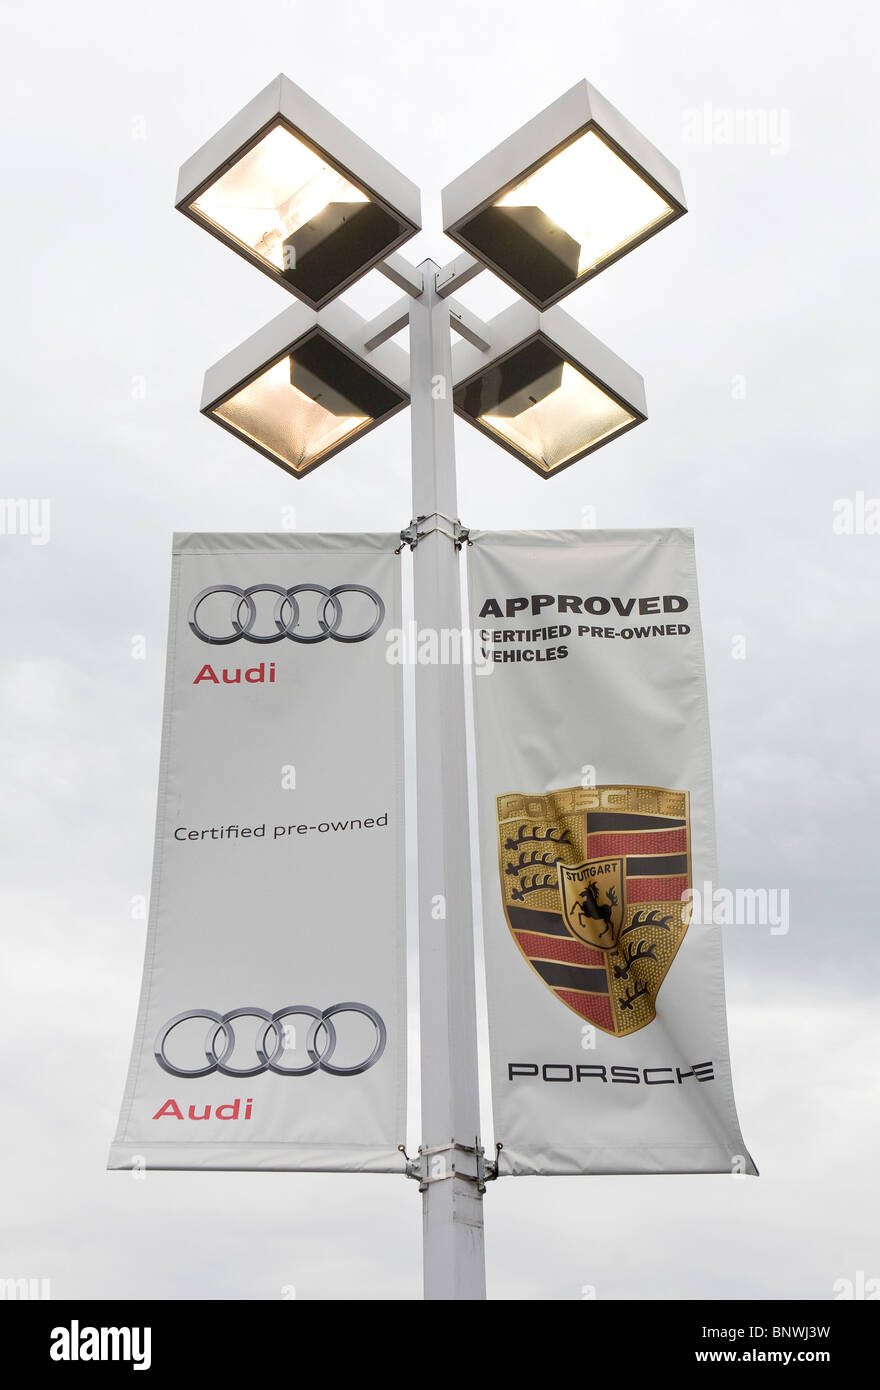 Un concesionario de coches Audi y Porsche. Foto de stock